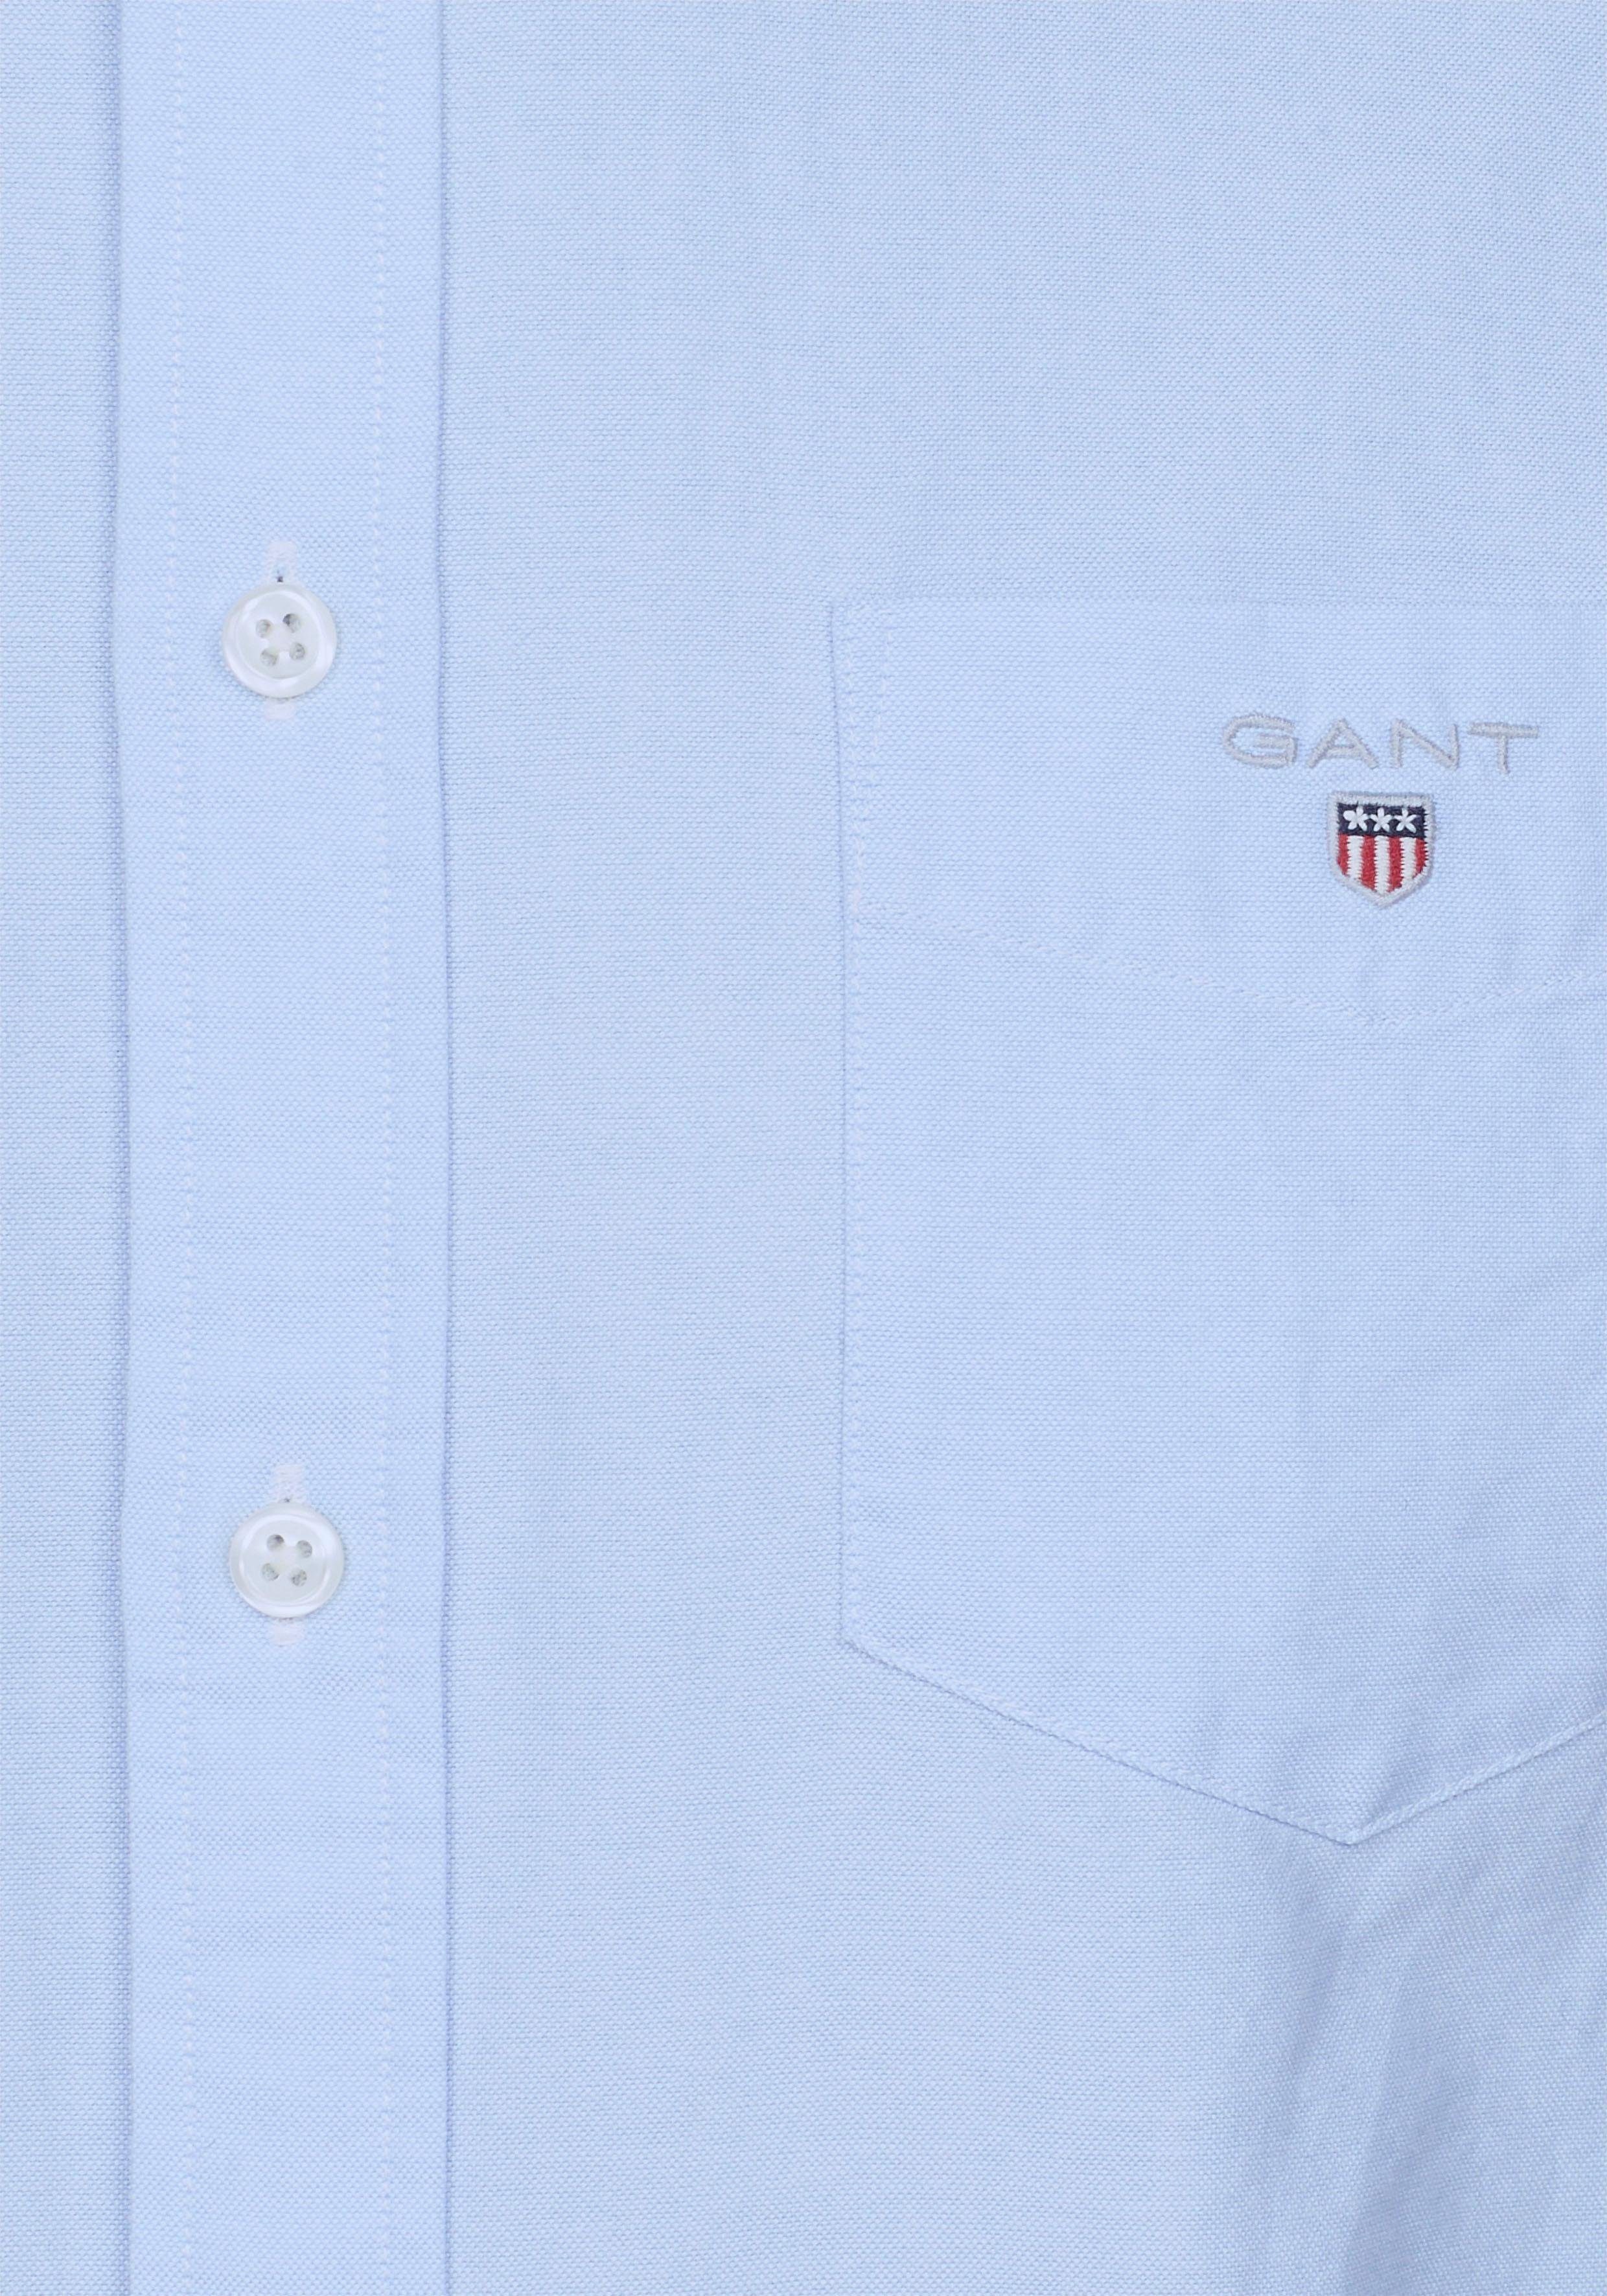 Gant Langarmhemd Oxford mit der blue Logostickerei Brusttasche capri auf